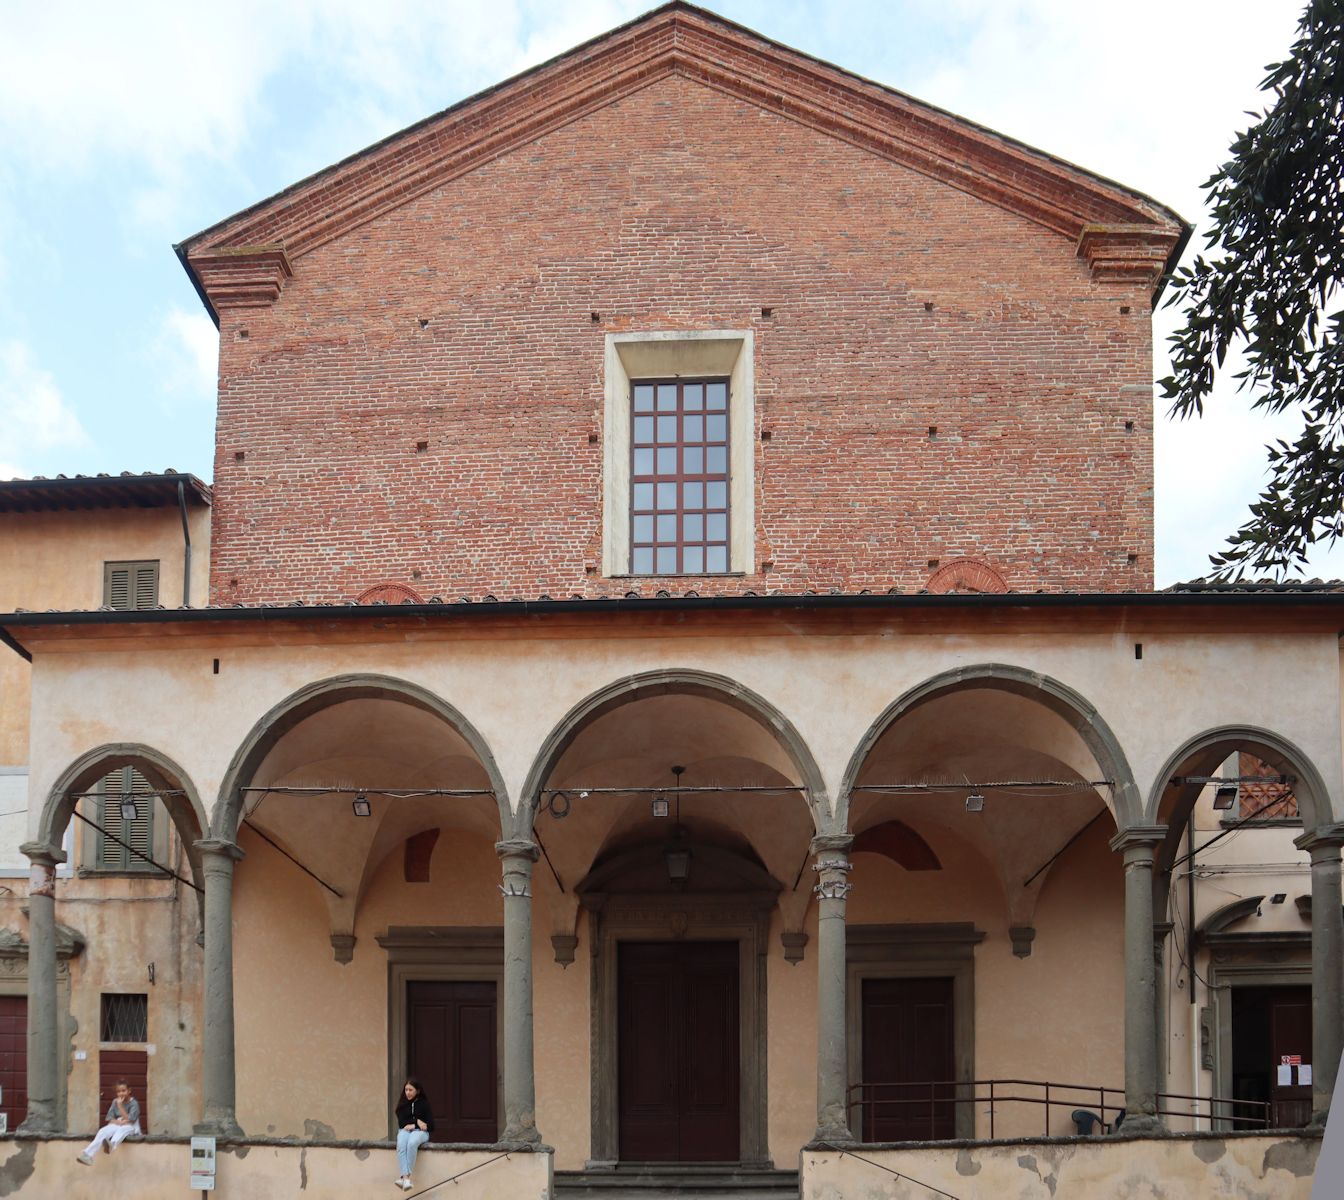 Palazzo Aldobrandini in Florenz